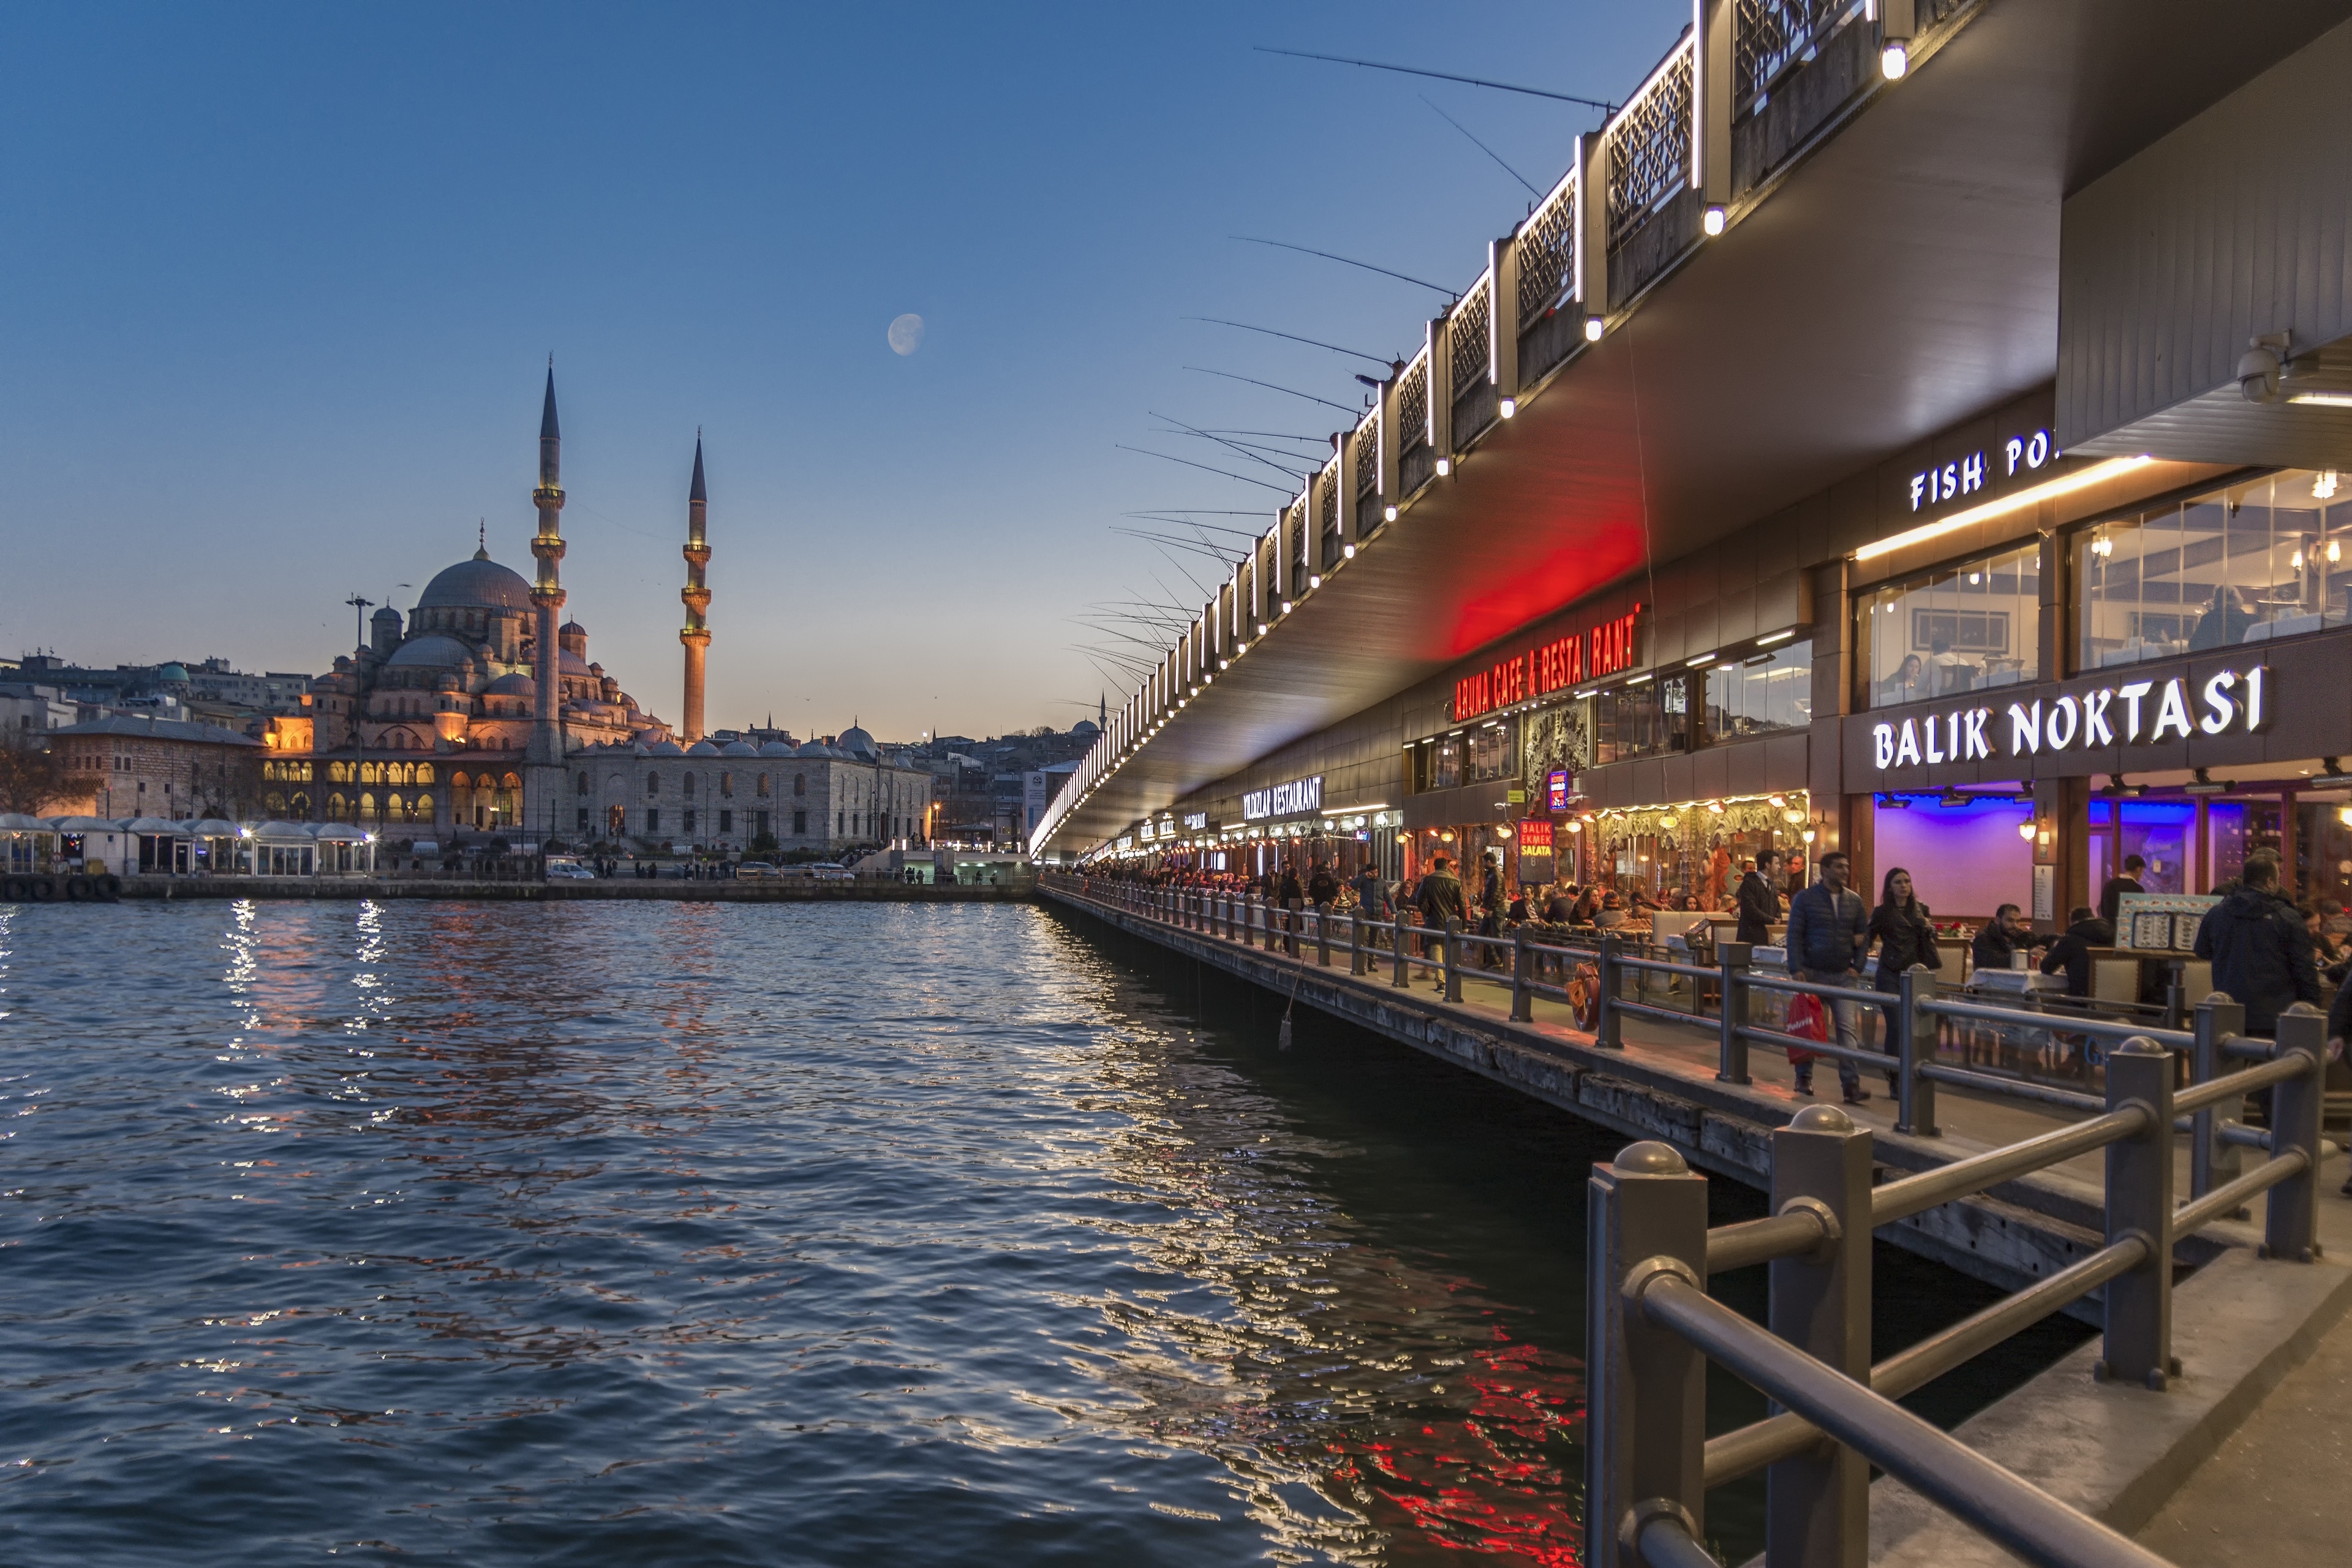 Galata Bridge in Istanbul City Center | Expedia